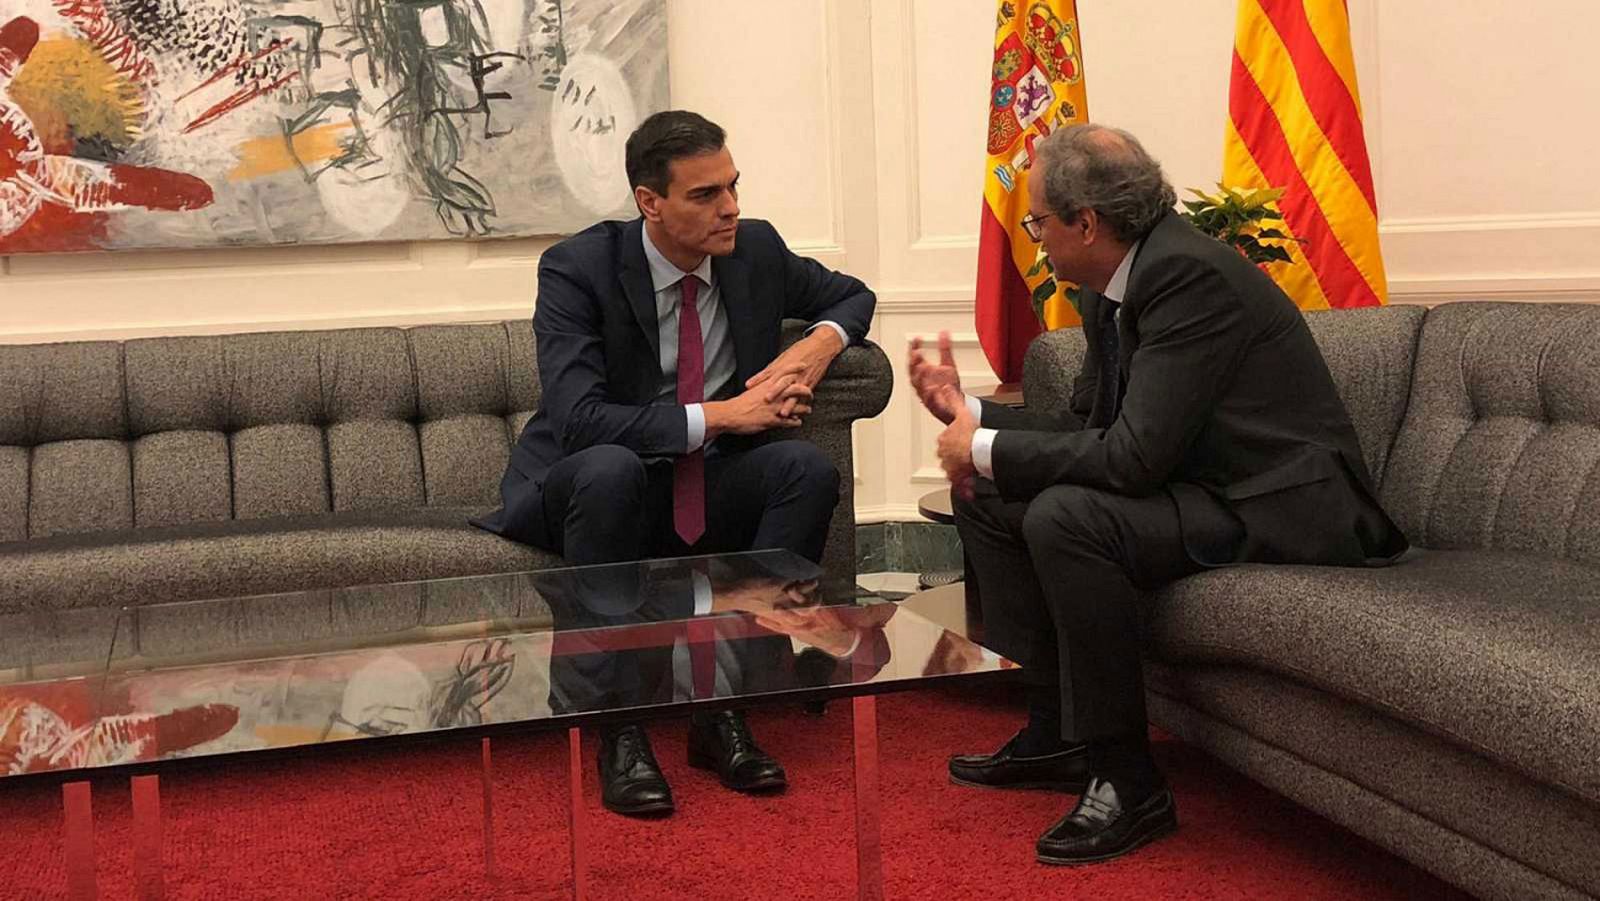 El presidente del Gobierno, Pedro Sánchez, charla con el presidente de la Generalitat, Quim Torra, en una imagen de archivo.